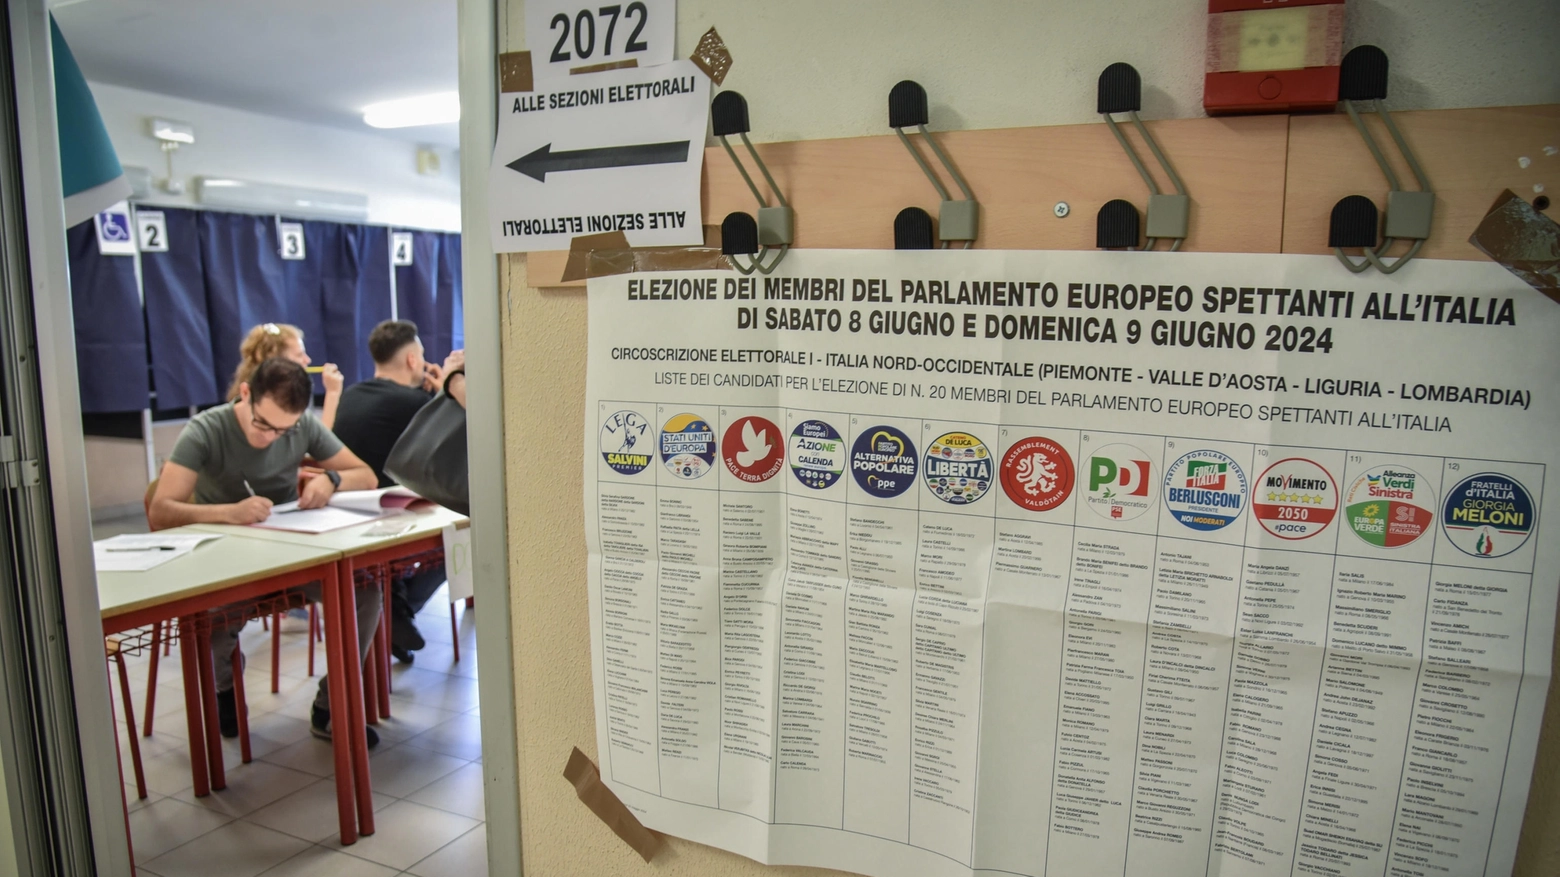 Il seggio elettorale delle elezioni europee di via Martinetti a Milano